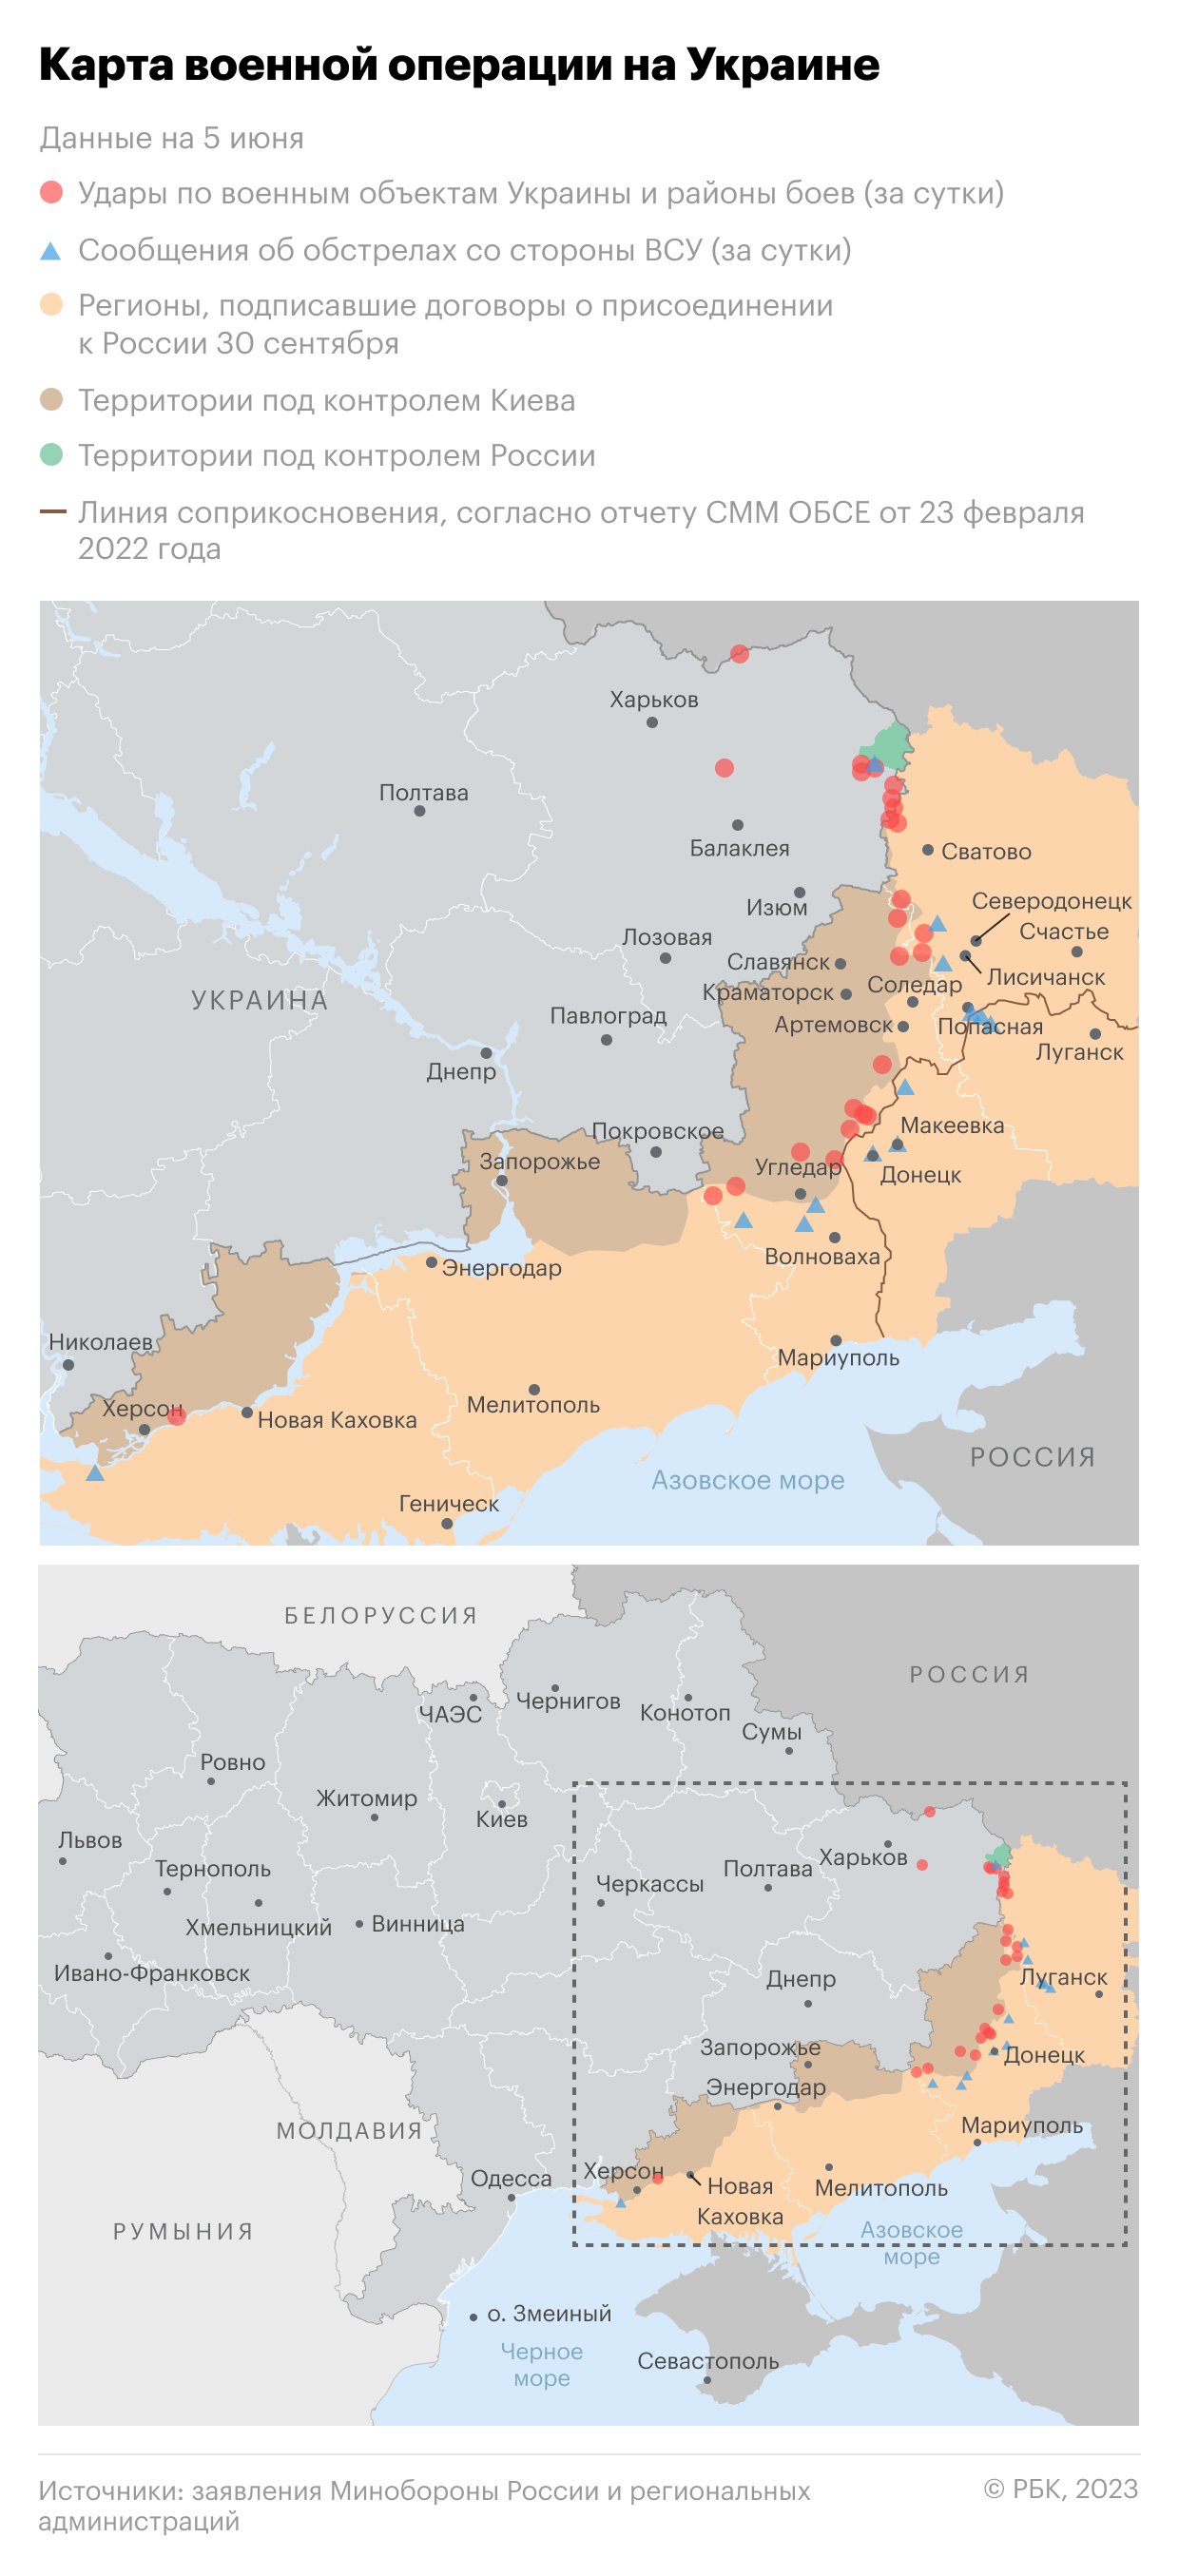 Президент Чехии спрогнозировал перелом в конфликте на Украине в 2023 году